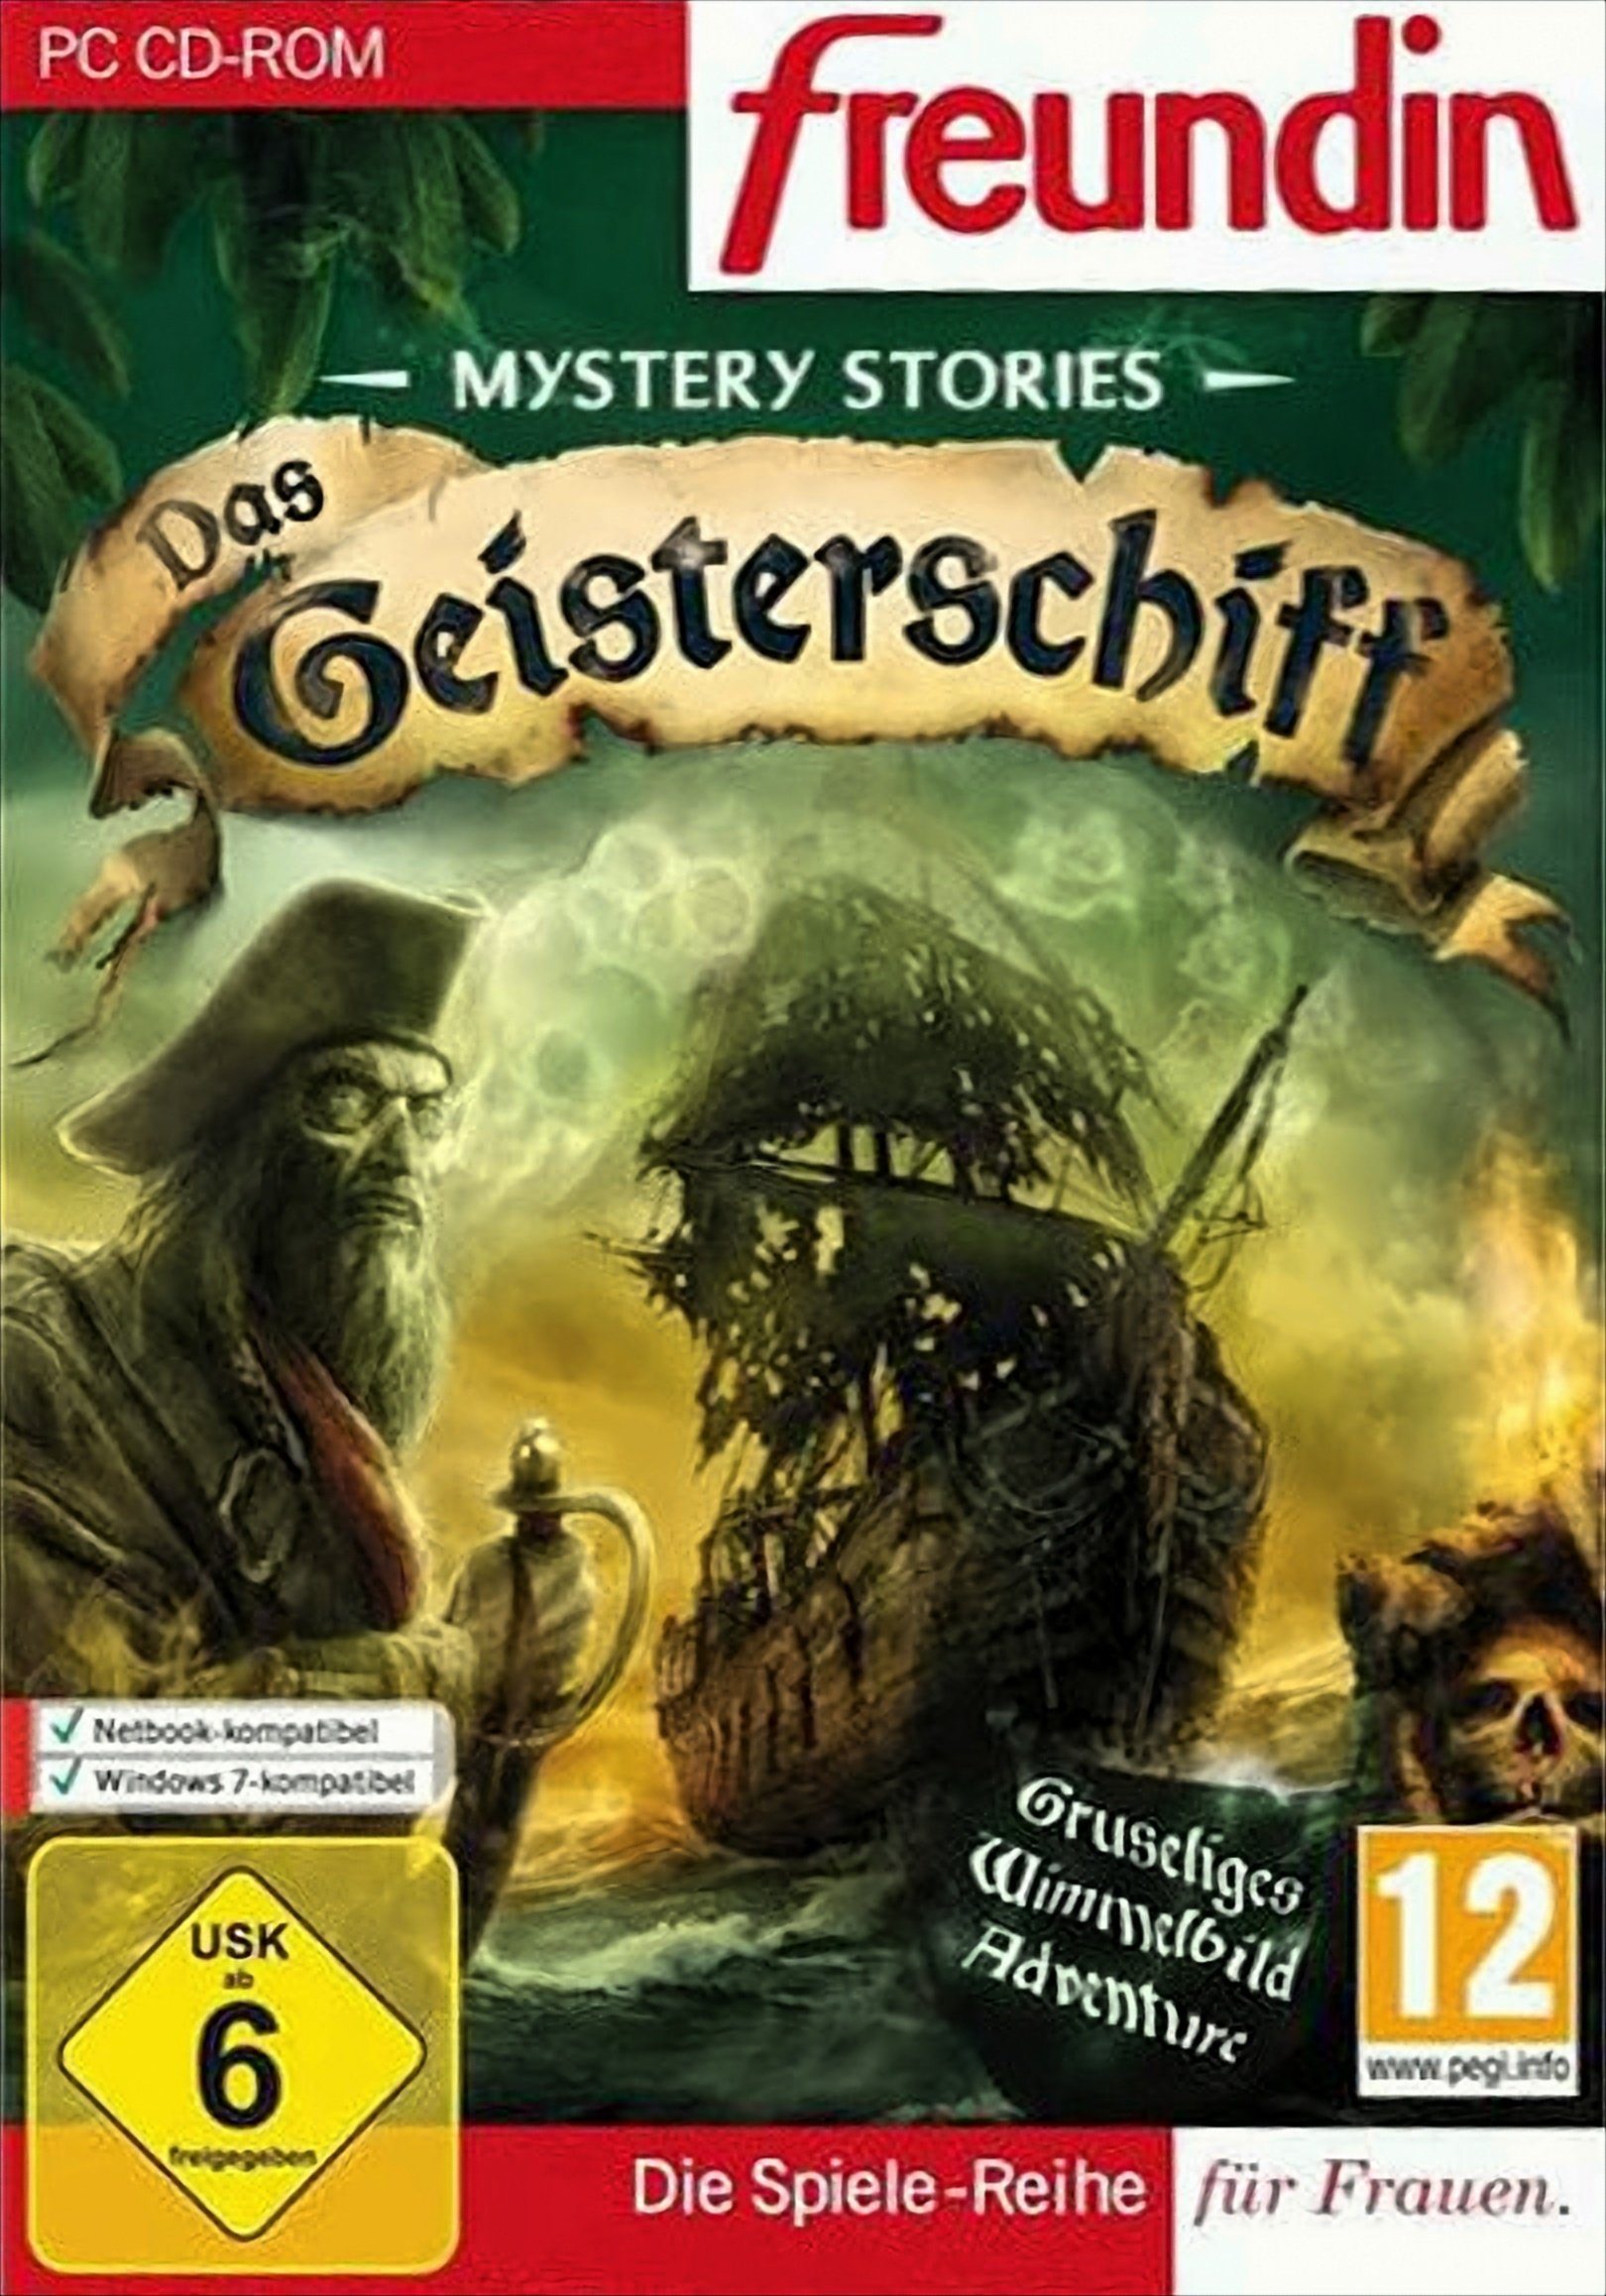 Mystery Stories: Das Geisterschiff PC